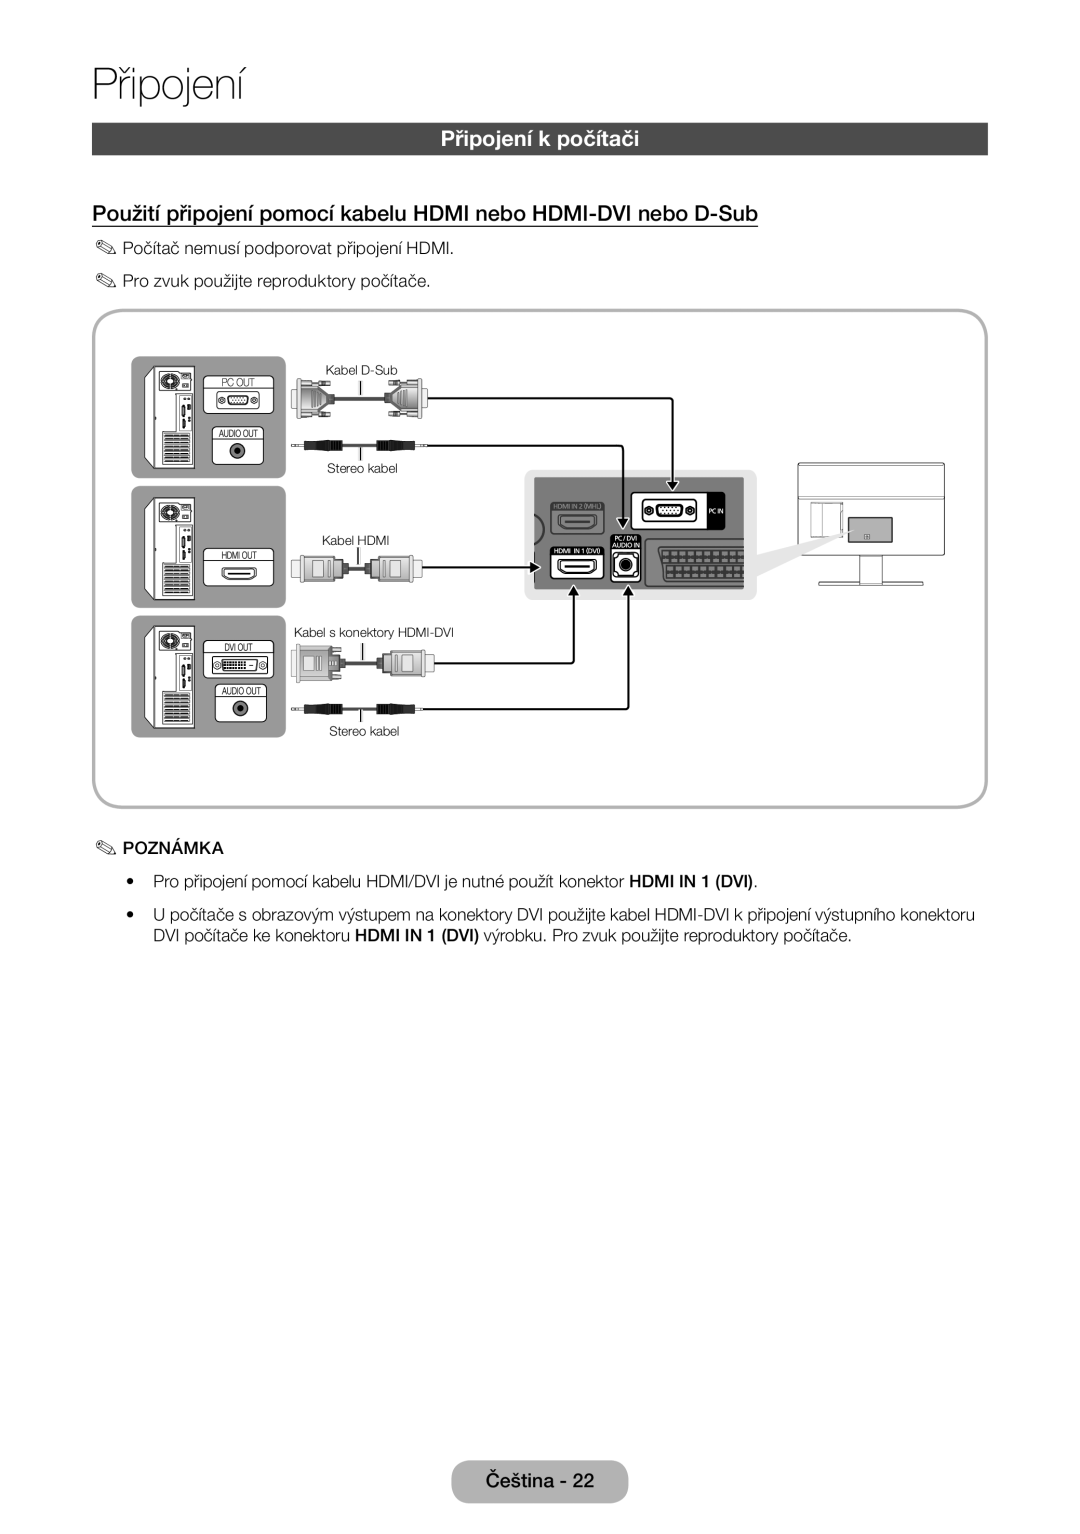 Samsung LT24D590EW/EN, LT27D390EW/EN Připojení k počítači, Použití připojení pomocí kabelu HDMI nebo HDMI-DVI nebo D-Sub 